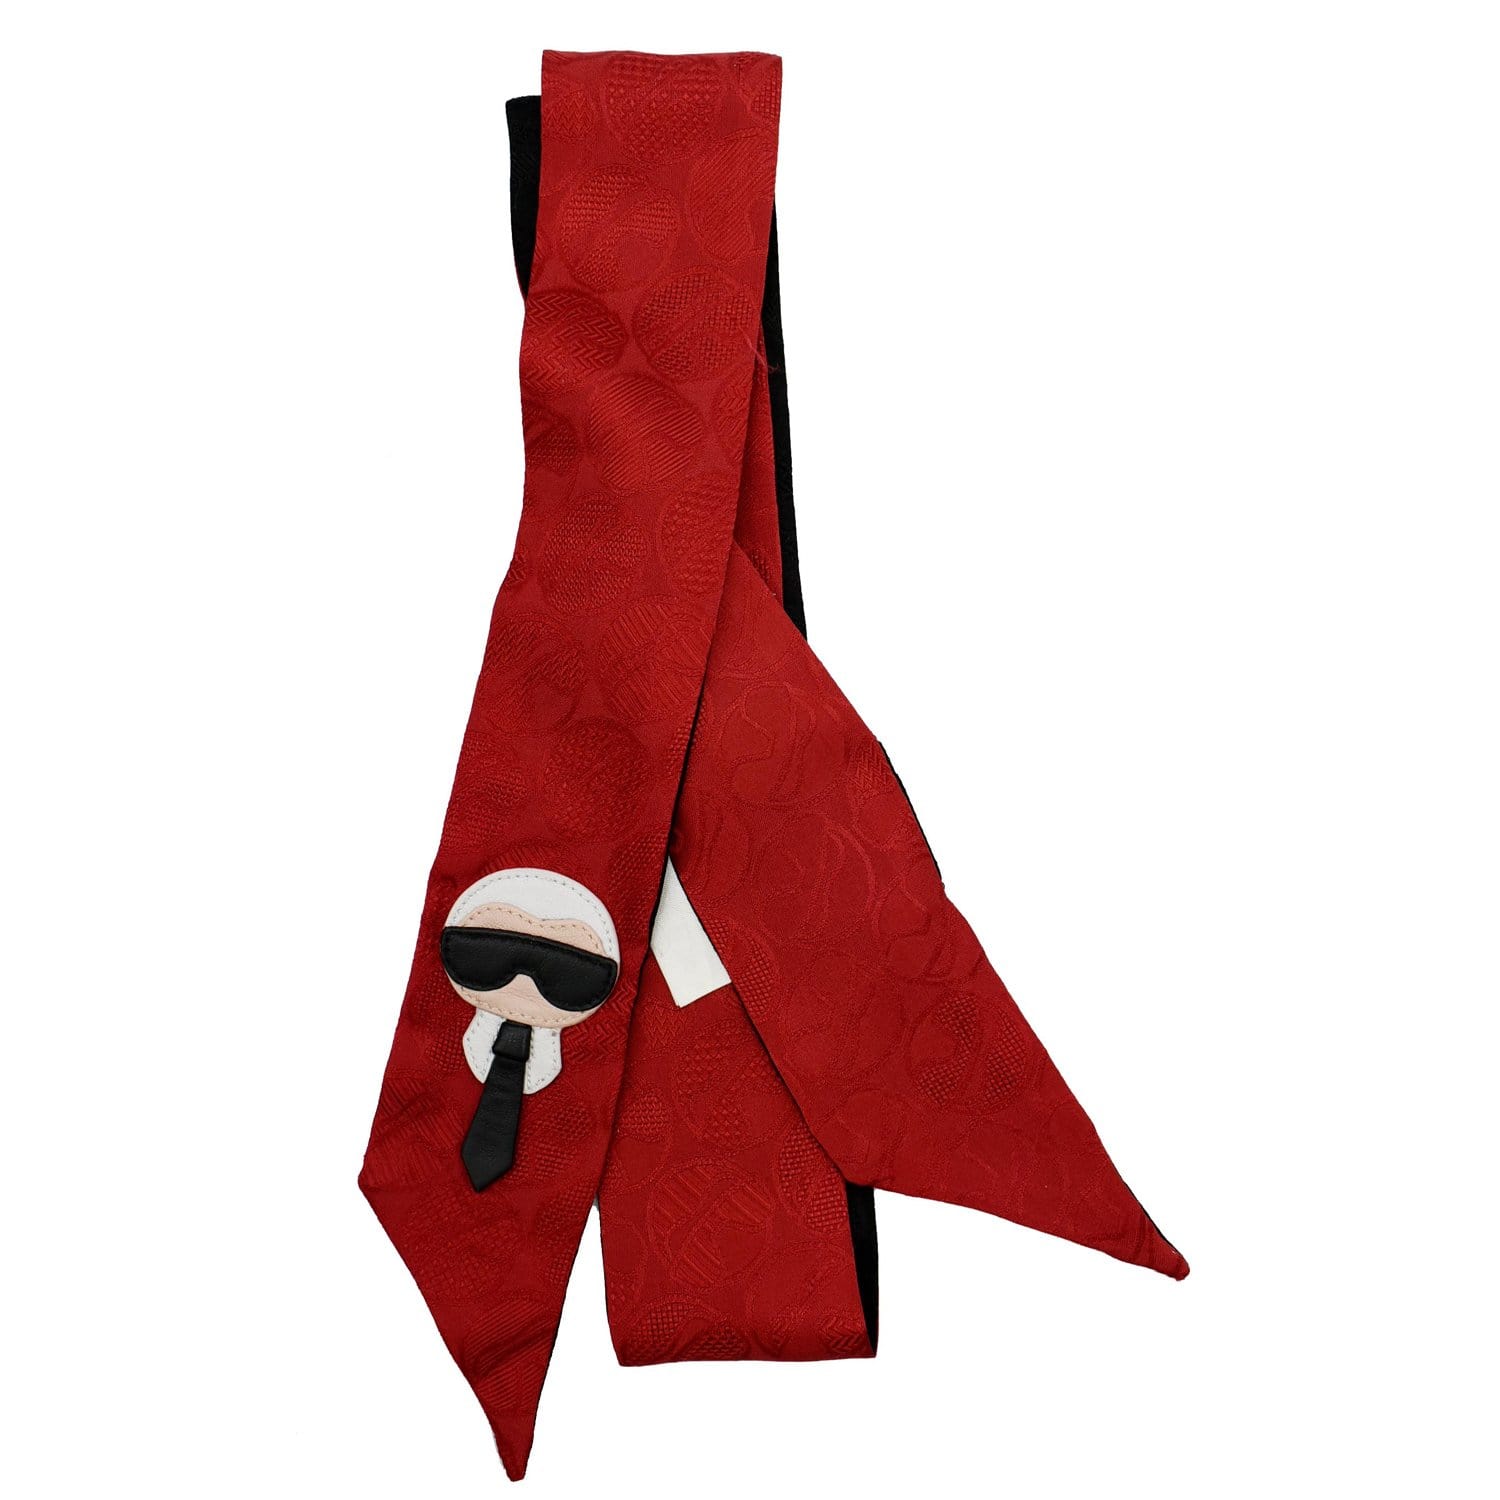 Fendi scarf 100% silk appraised size 82 x 82 cm clothing brand